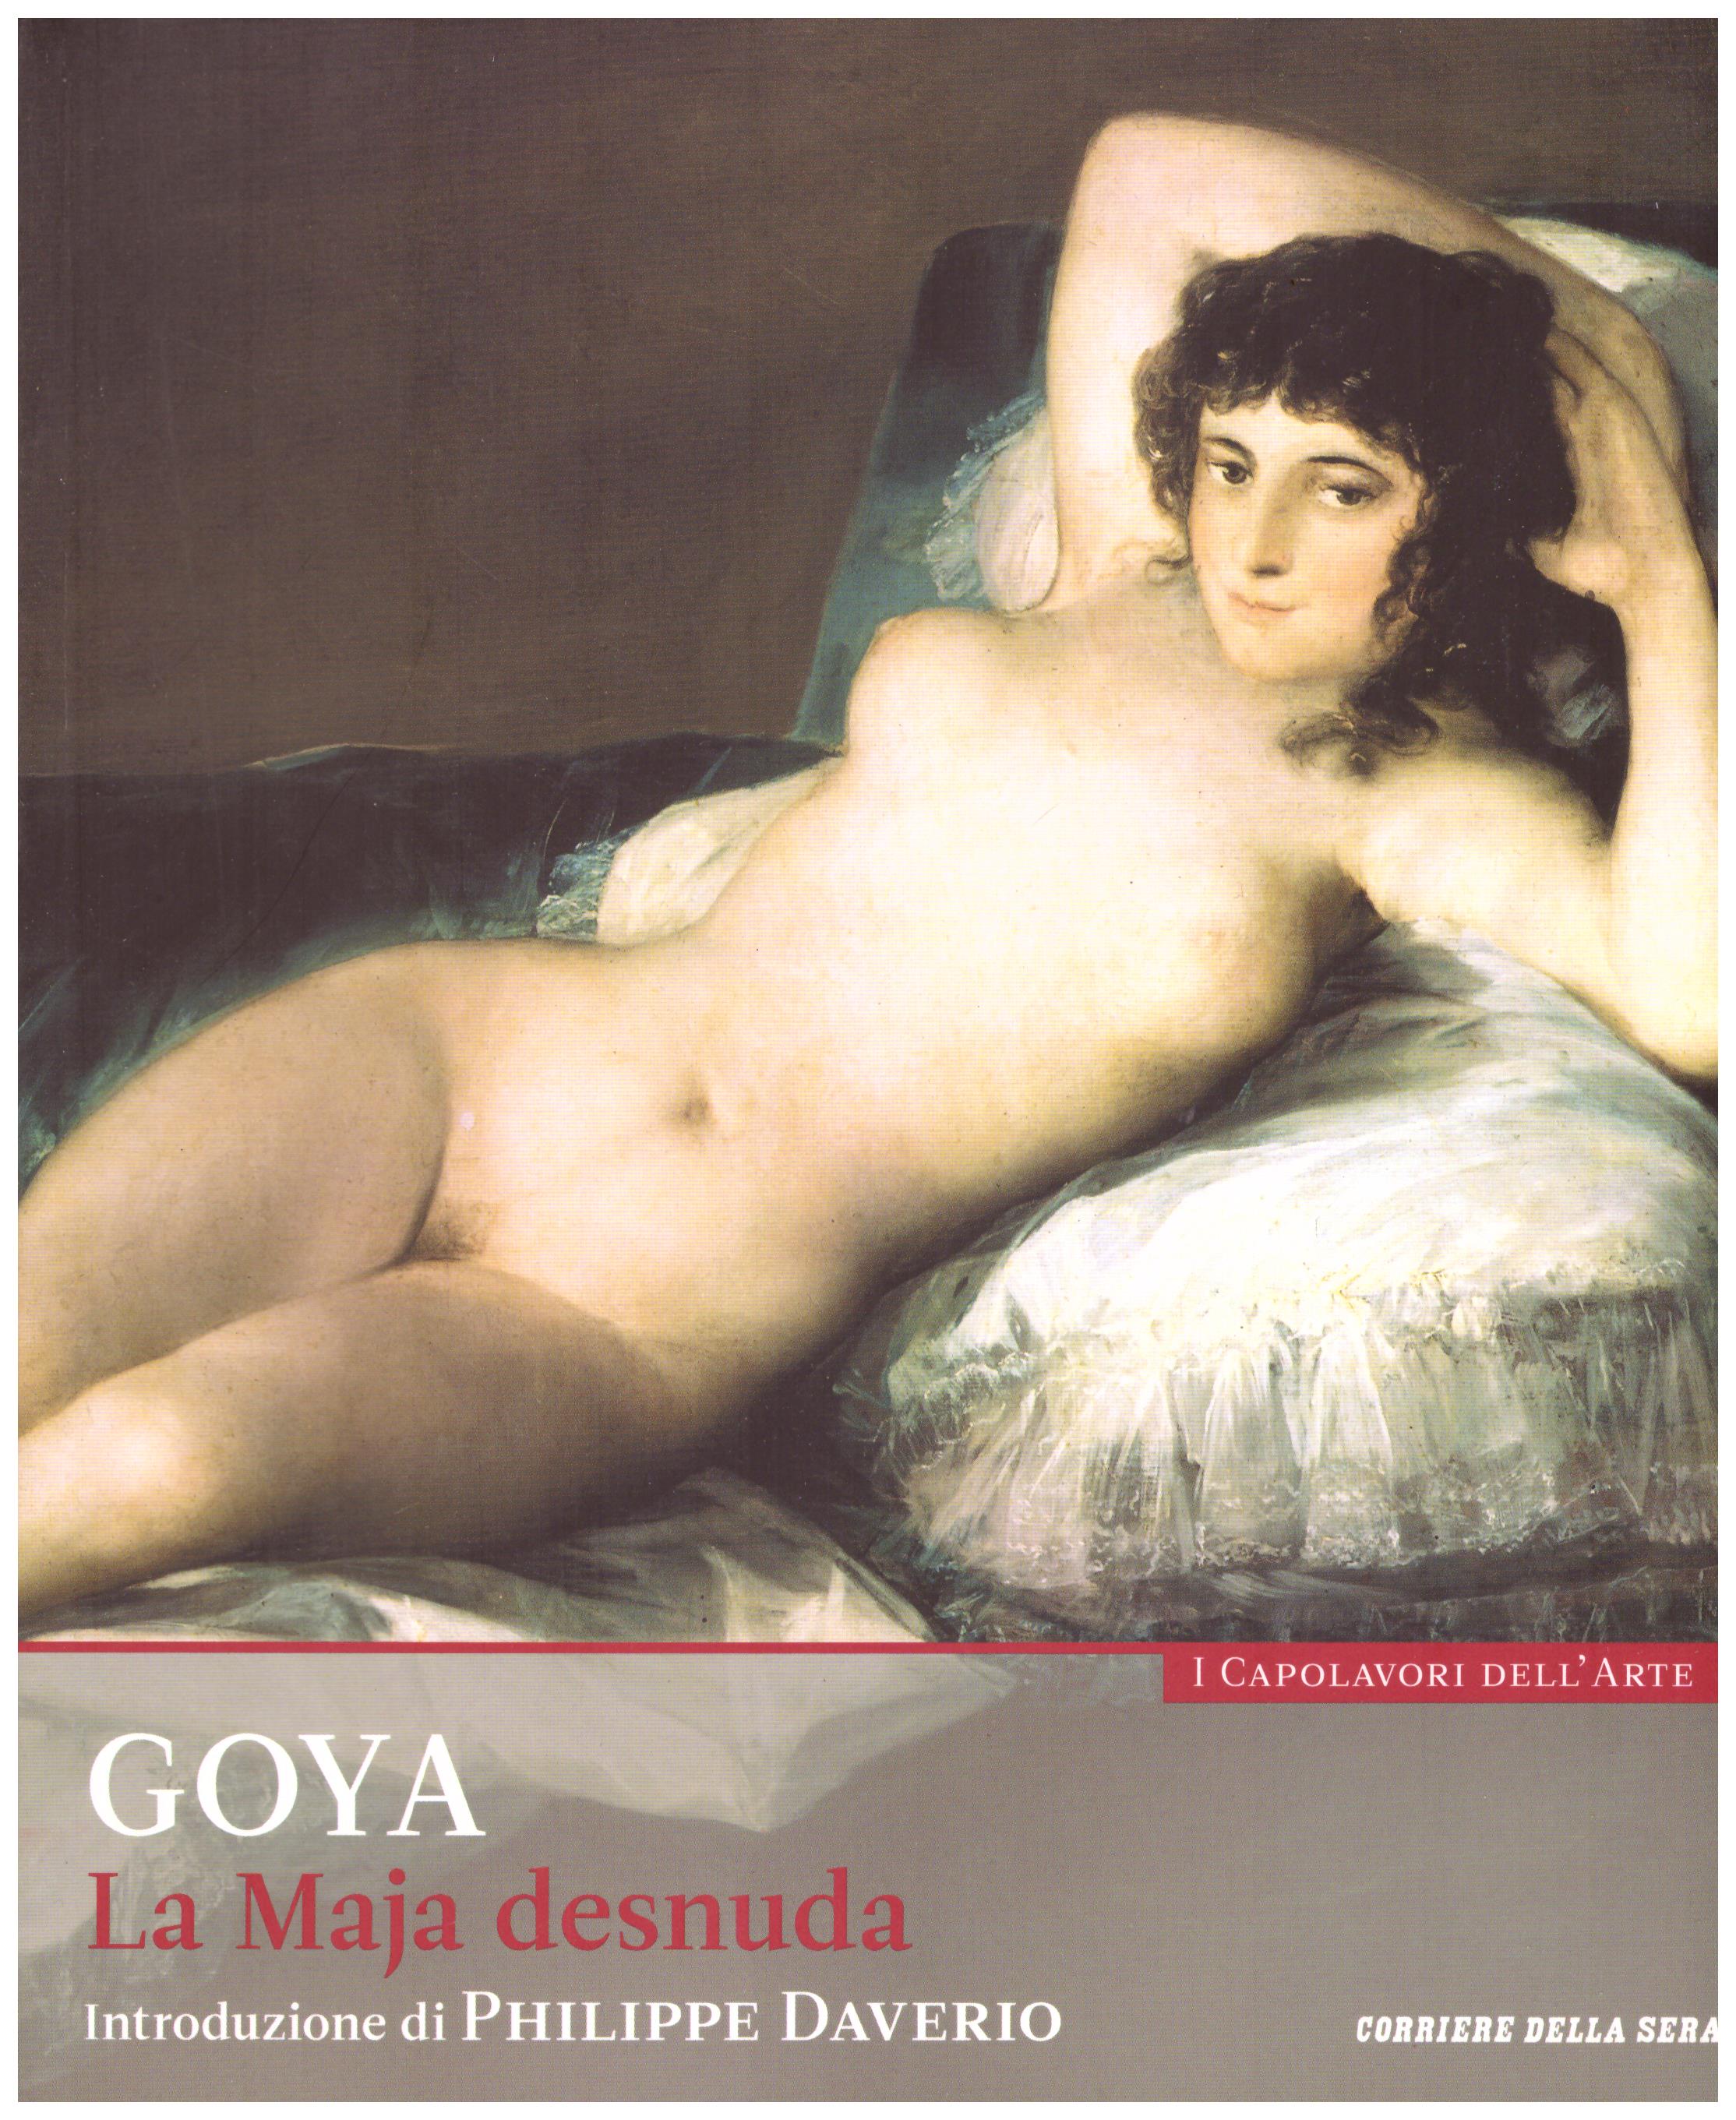 Titolo: I capolavori dell'arte, Goya n.23 Autore : AA.VV.   Editore: education,it/corriere della sera, 2015